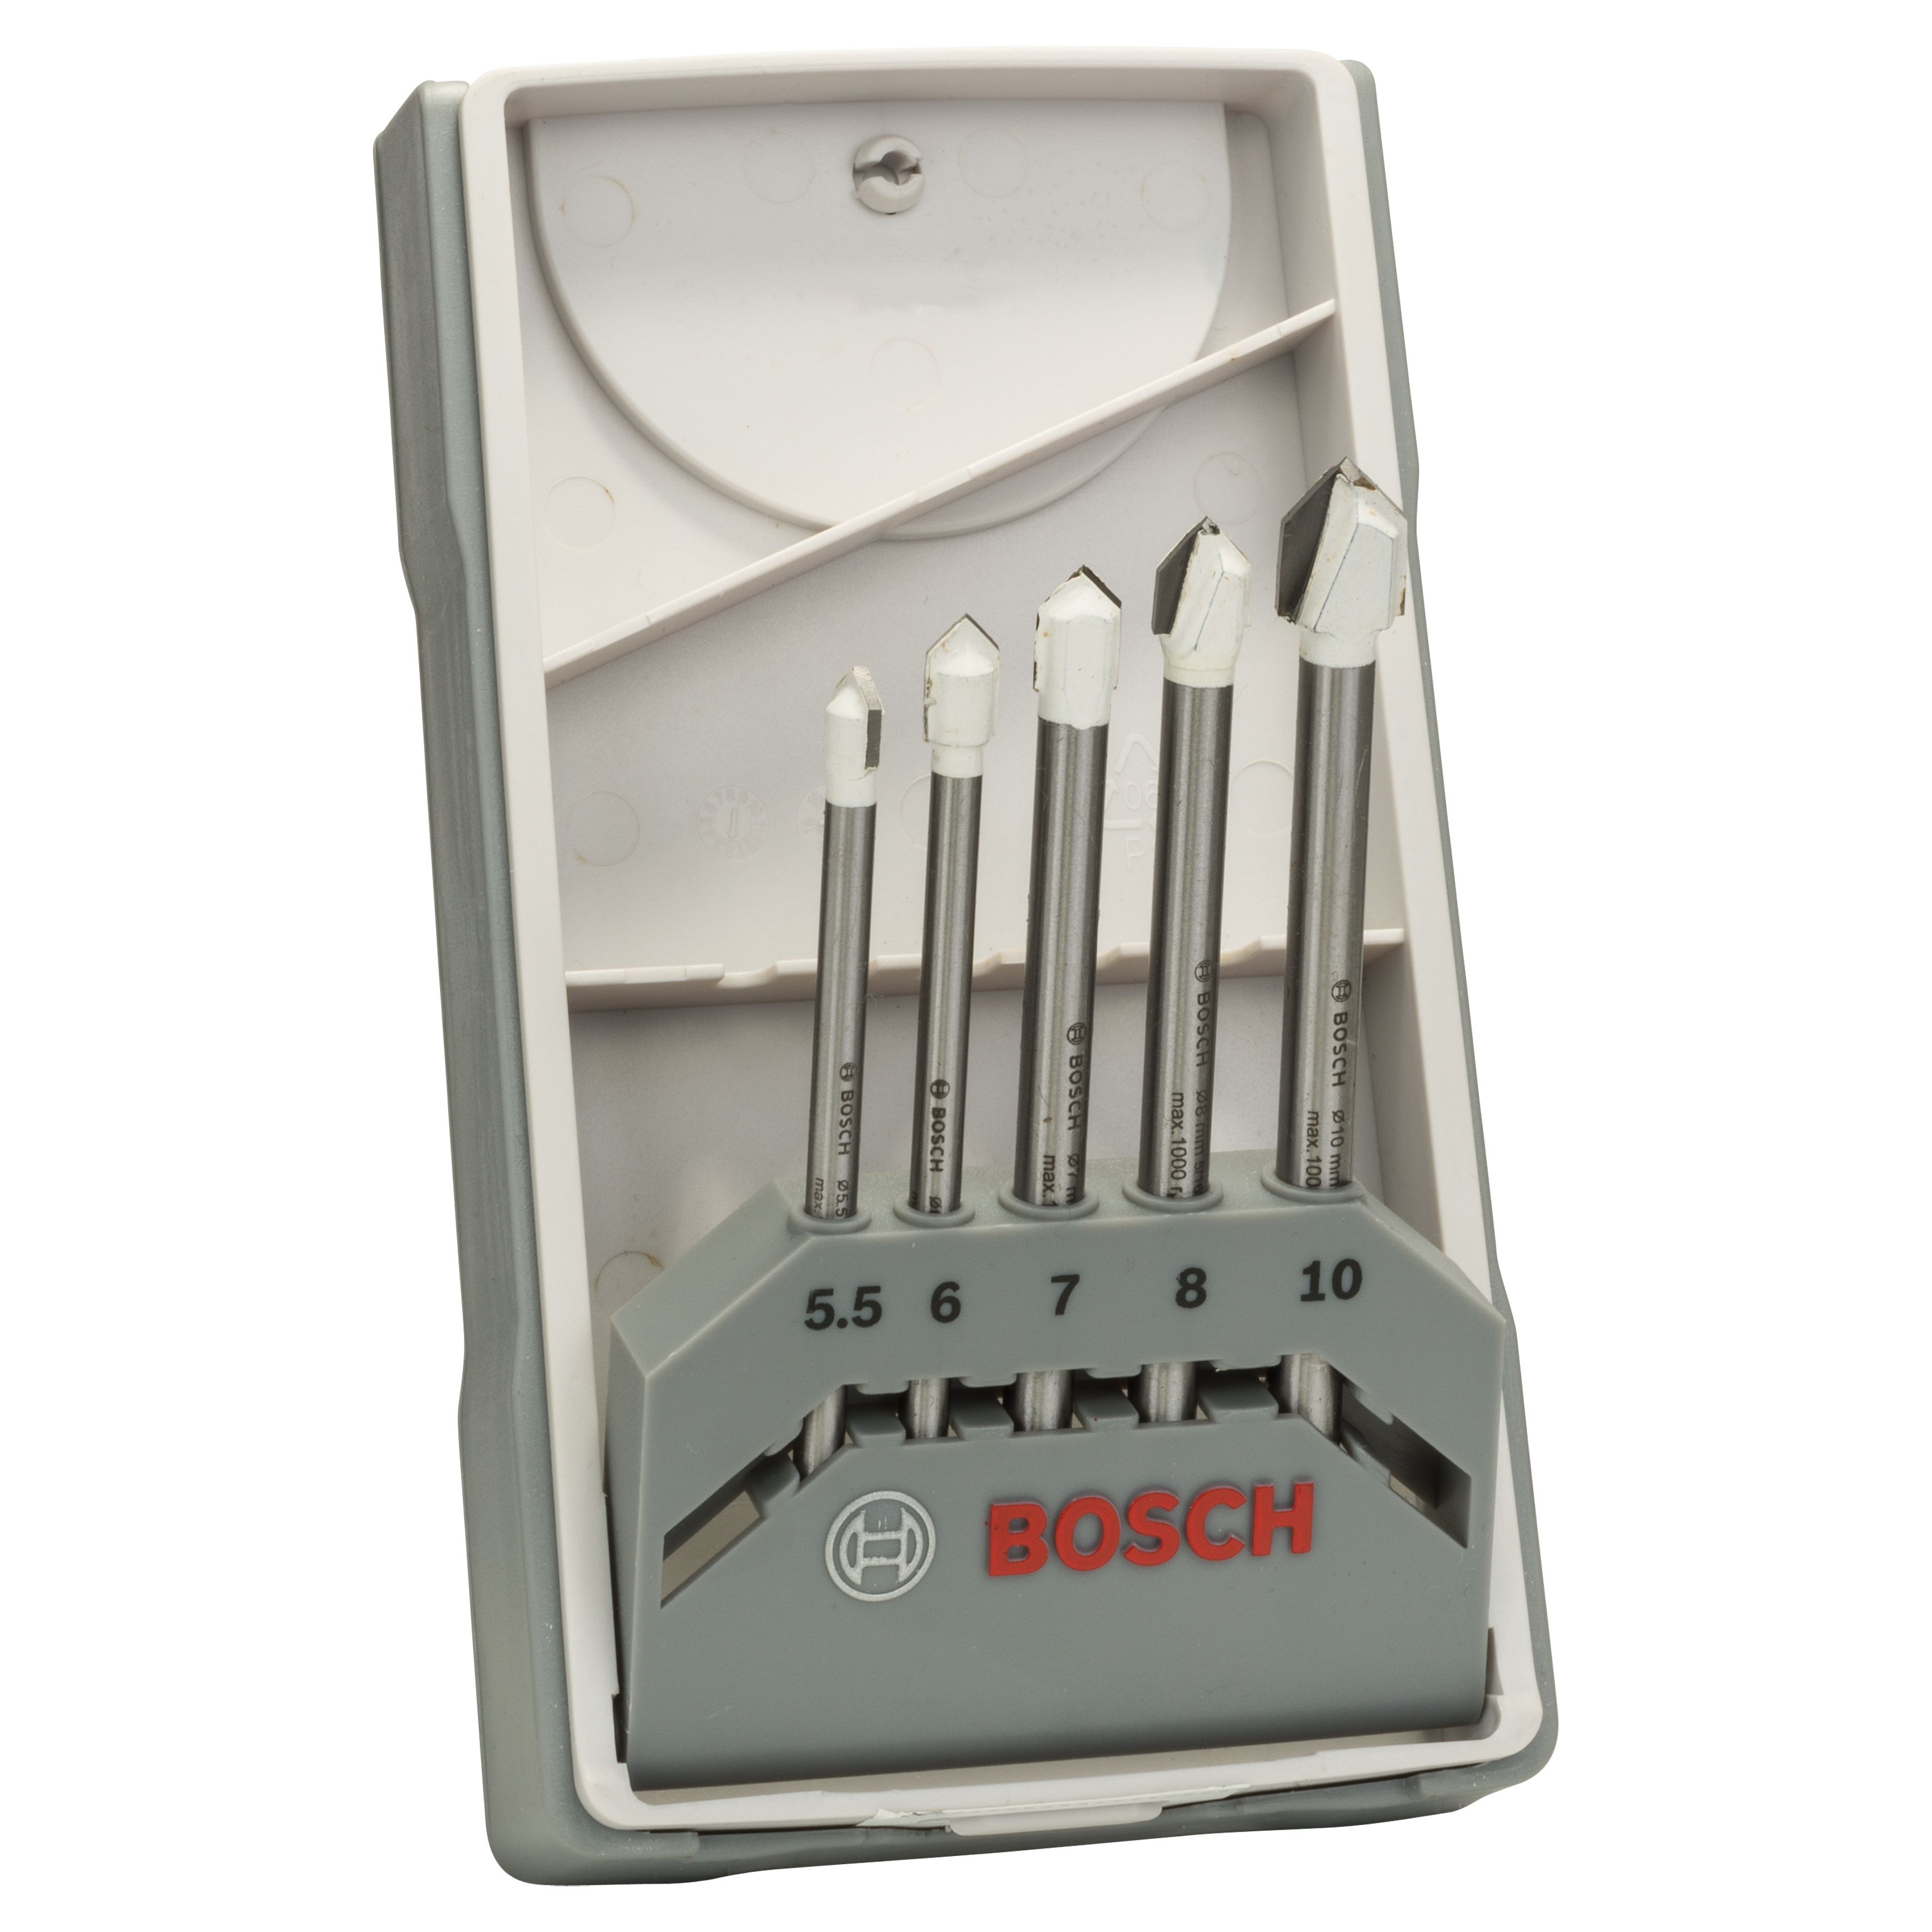 Bosch 5 piece Tile drill bit set